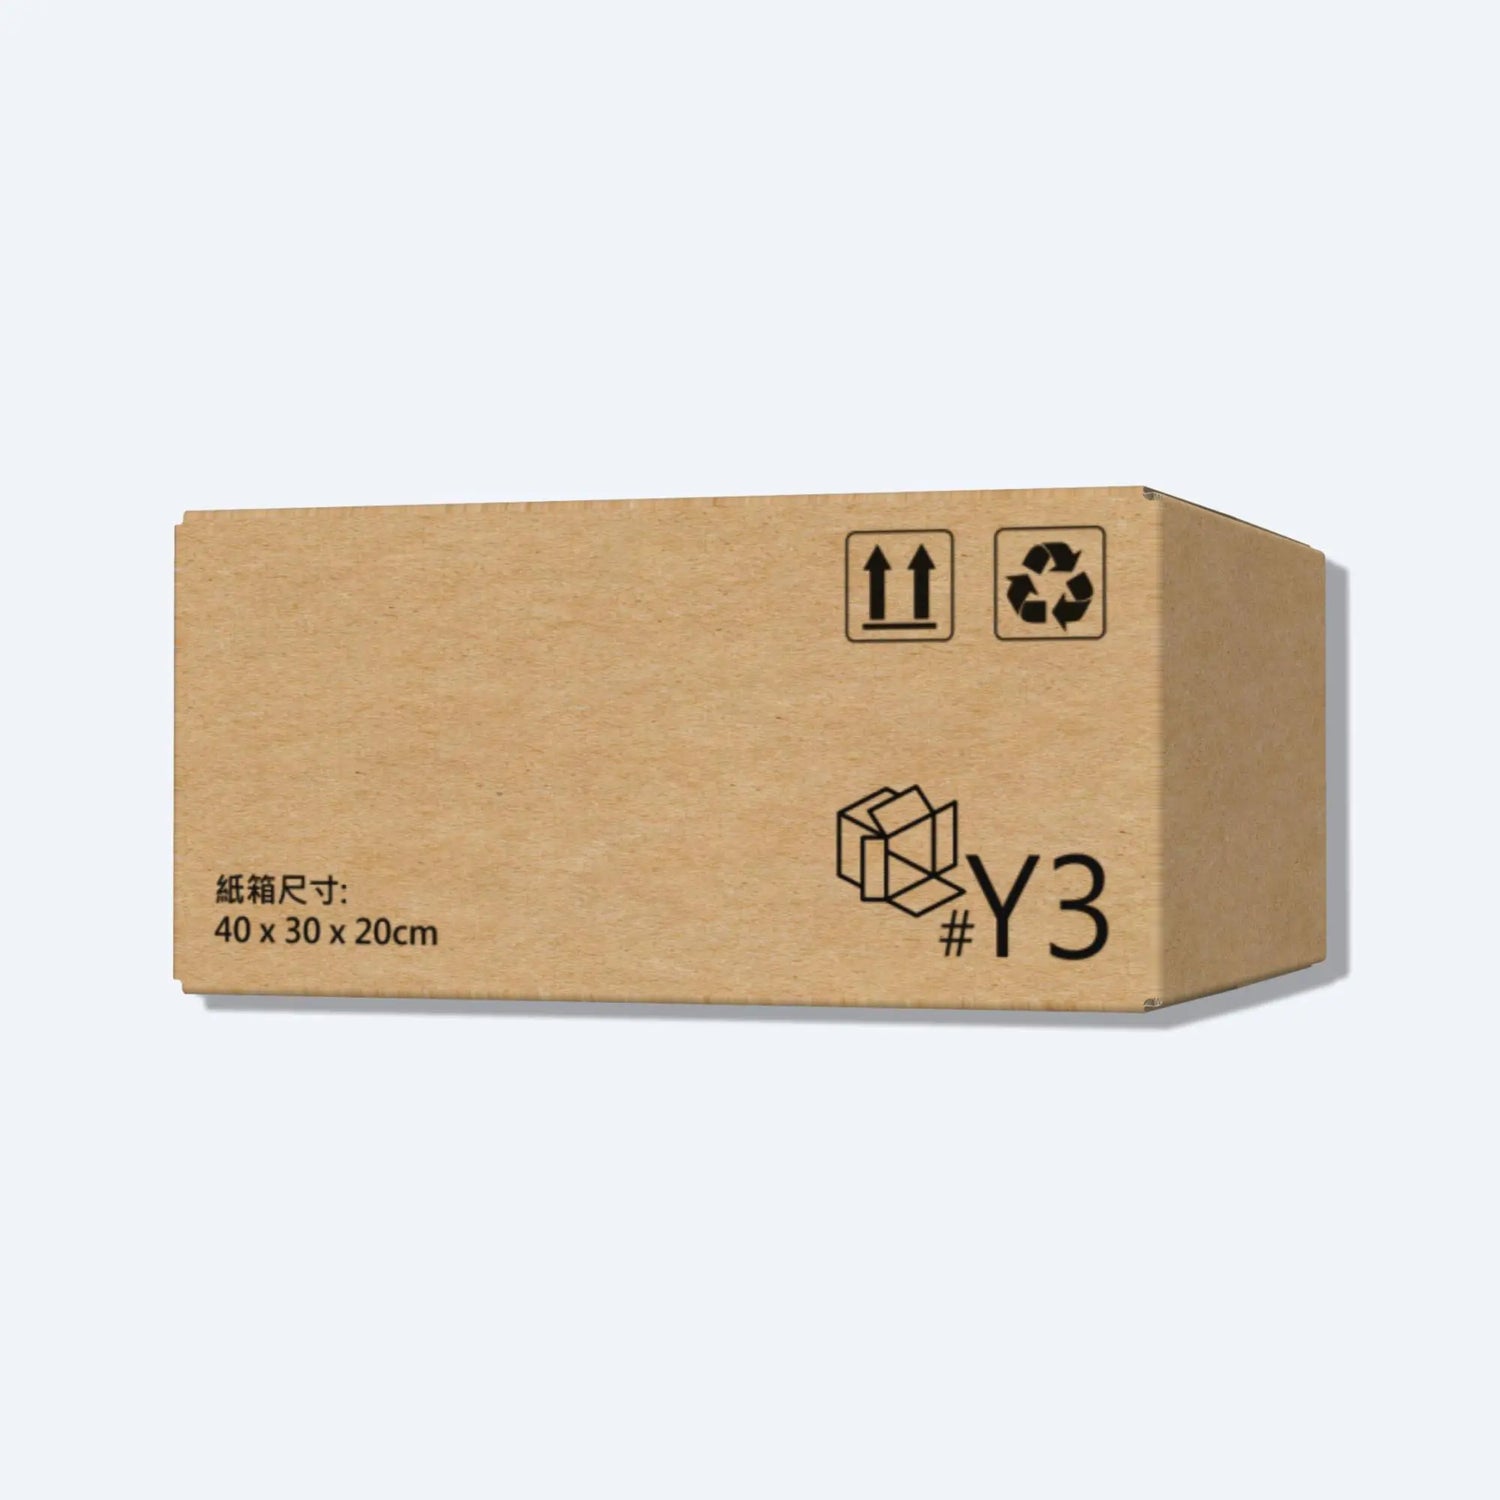 中型的順豐Y3紙箱正面圖，印有清楚的型號及40x30x20的尺寸。